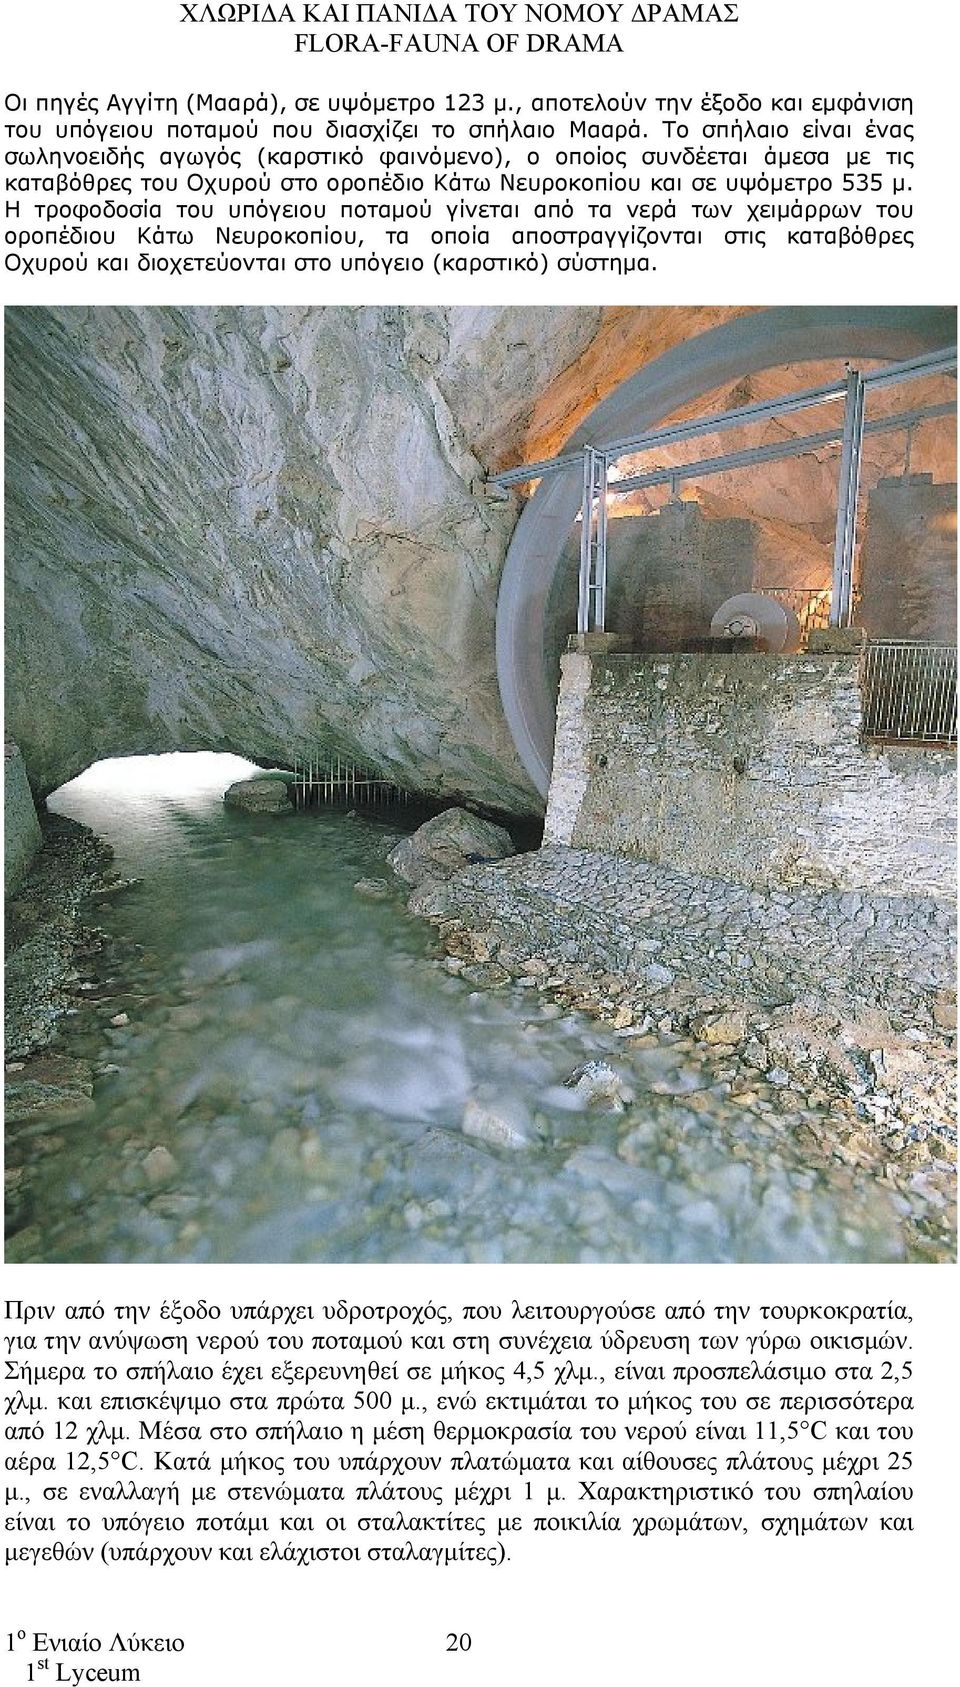 Η τροφοδοσία του υπόγειου ποταμού γίνεται από τα νερά των χειμάρρων του οροπέδιου Κάτω Νευροκοπίου, τα οποία αποστραγγίζονται στις καταβόθρες Οχυρού και διοχετεύονται στο υπόγειο (καρστικό) σύστημα.